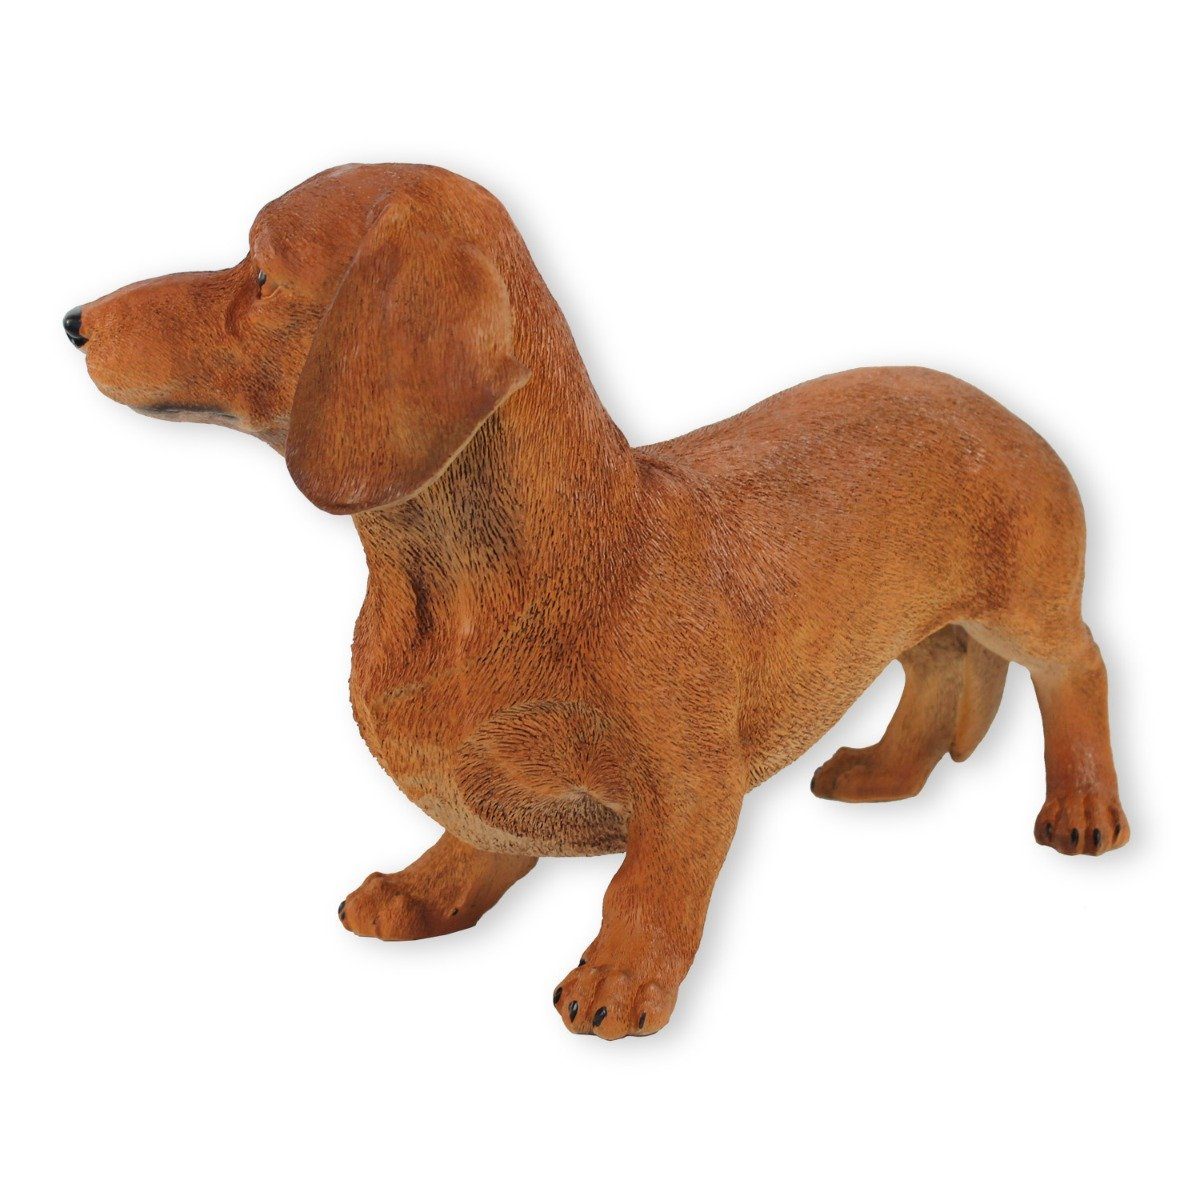 Tierfigur realistische Figur handbemalt, Hunde Tierfigur, Gisbert stehend Dackel Darstellung Hund colourliving